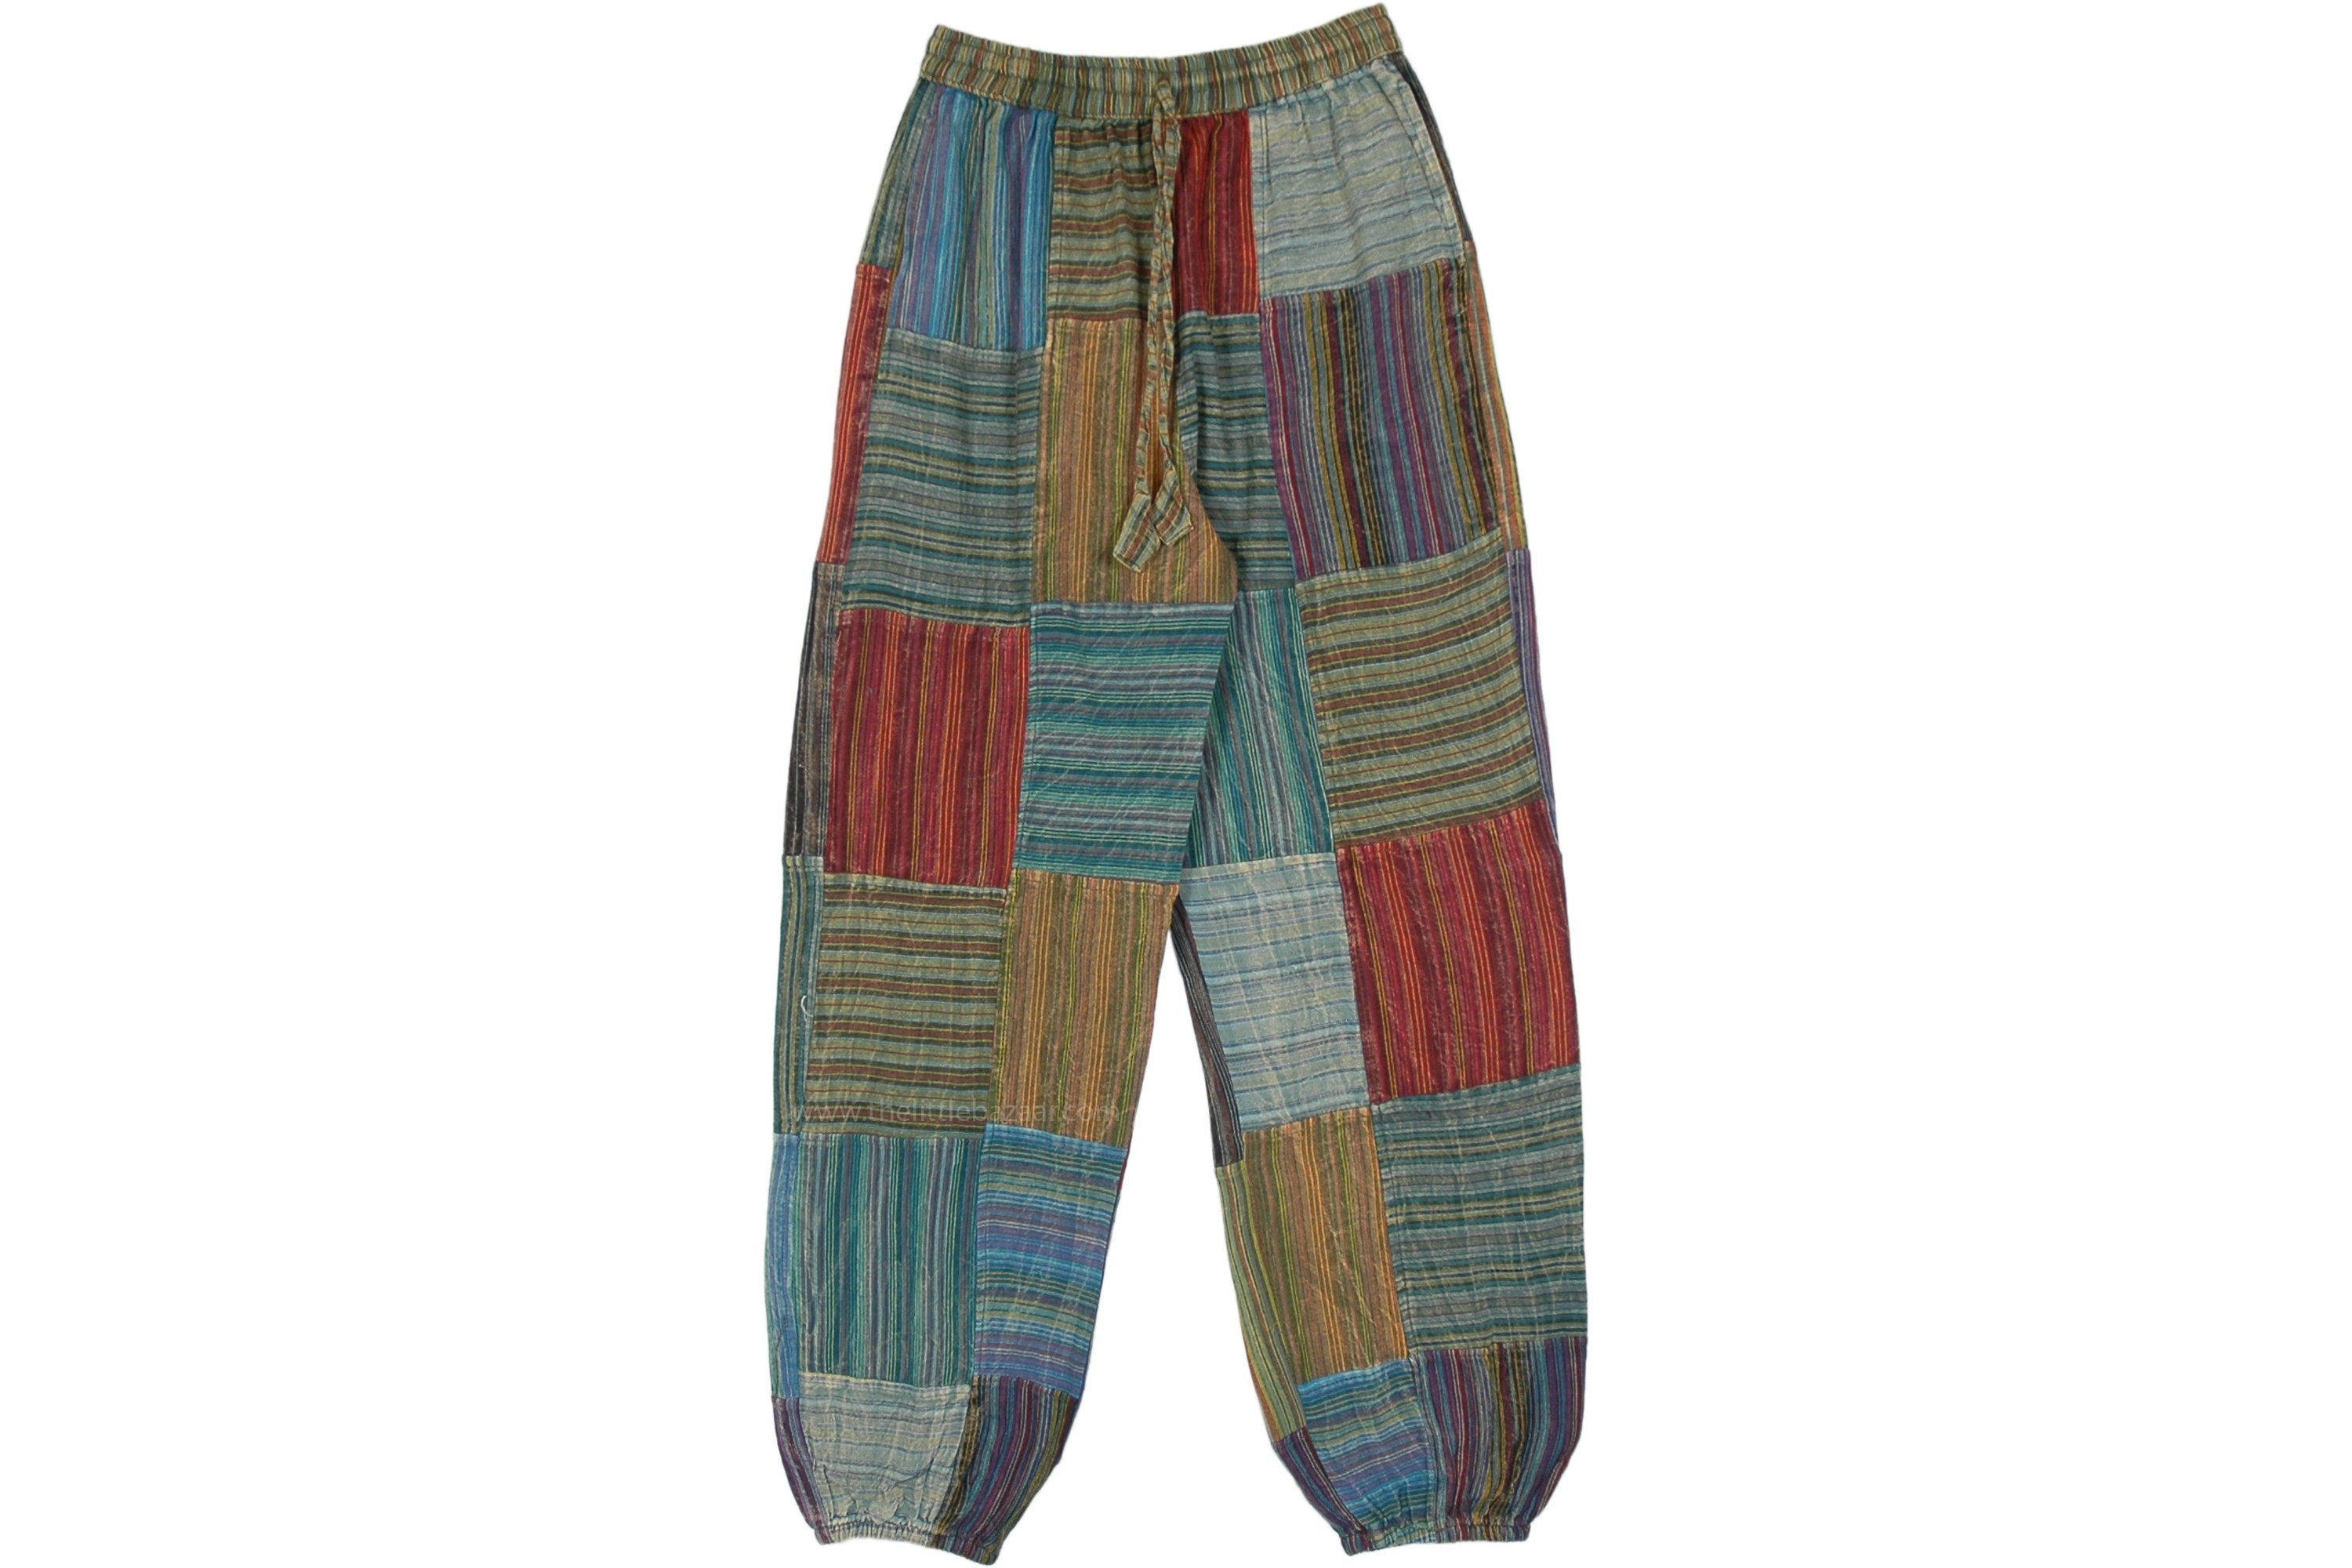 ➡ Comprar Pantalón Bombacho de Rayas Hippie al mejor Precio